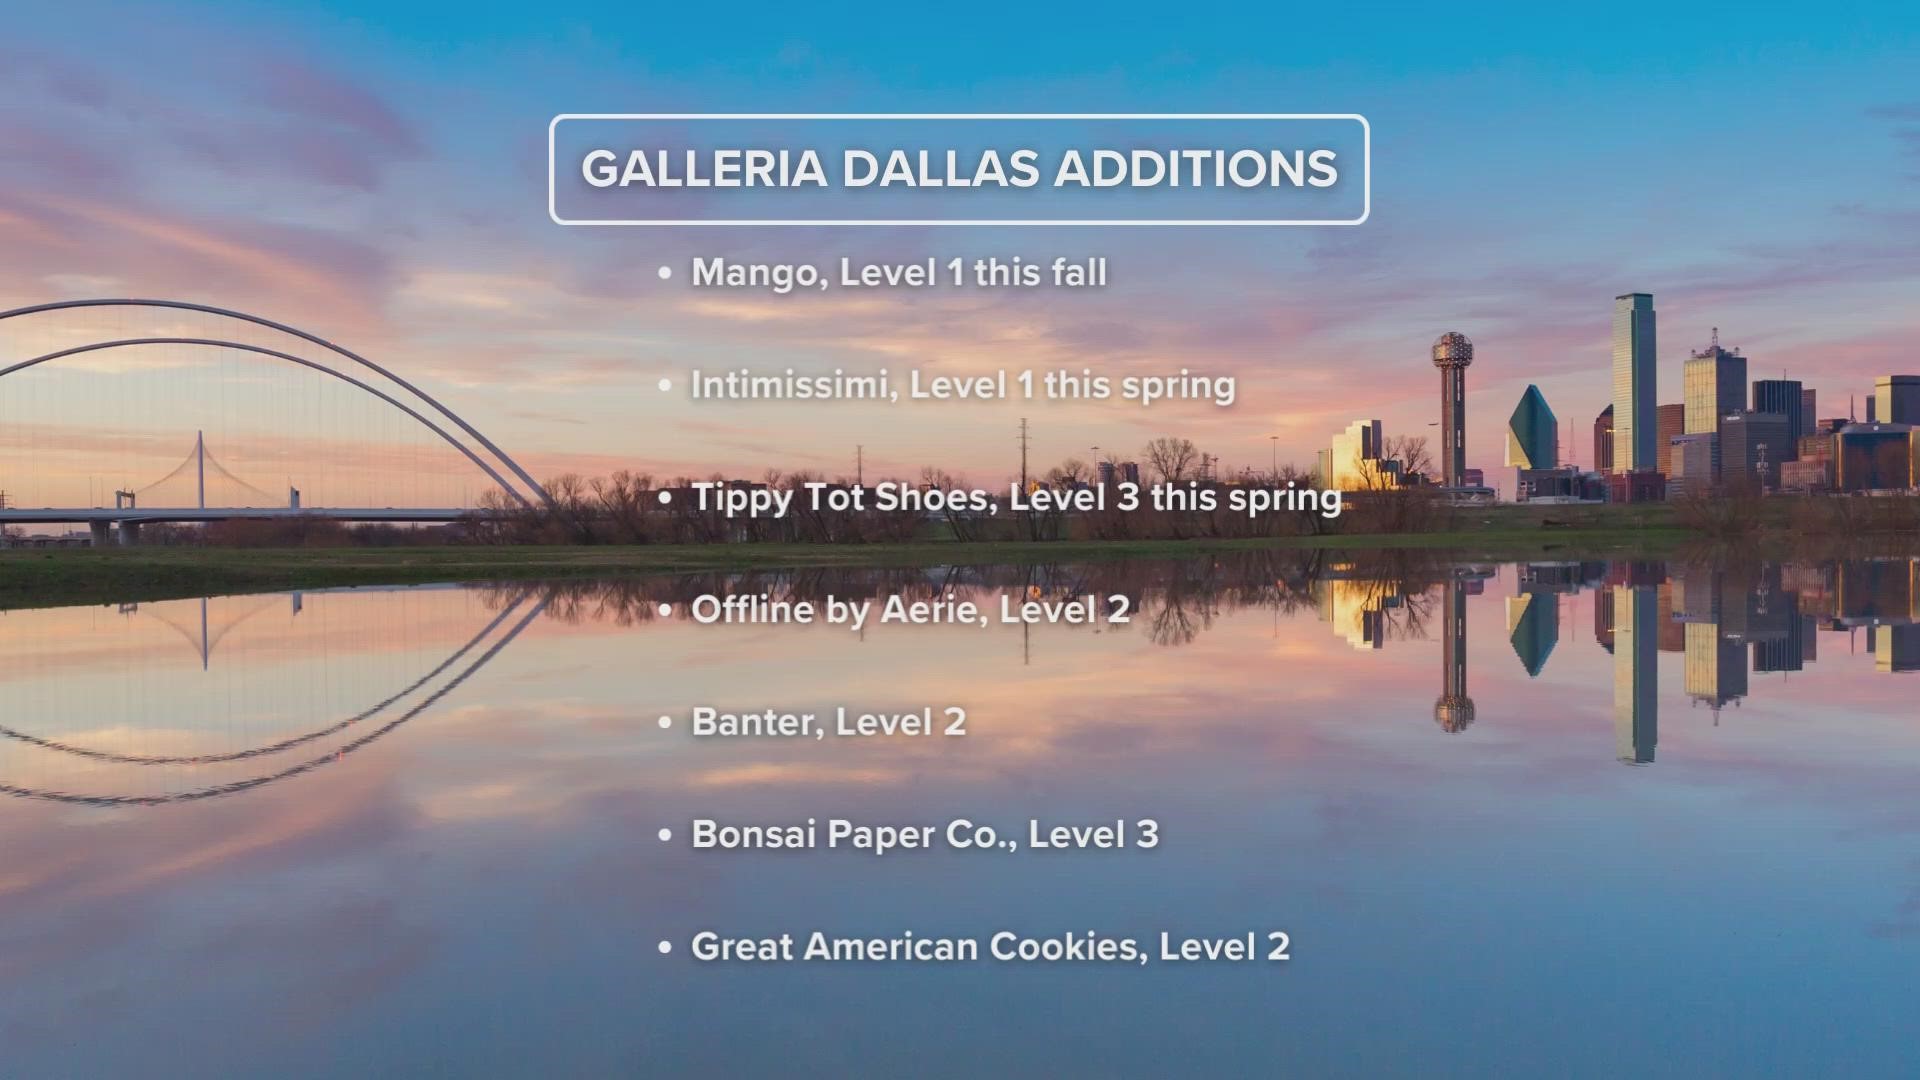 Galleria Dallas  Galleria Dallas